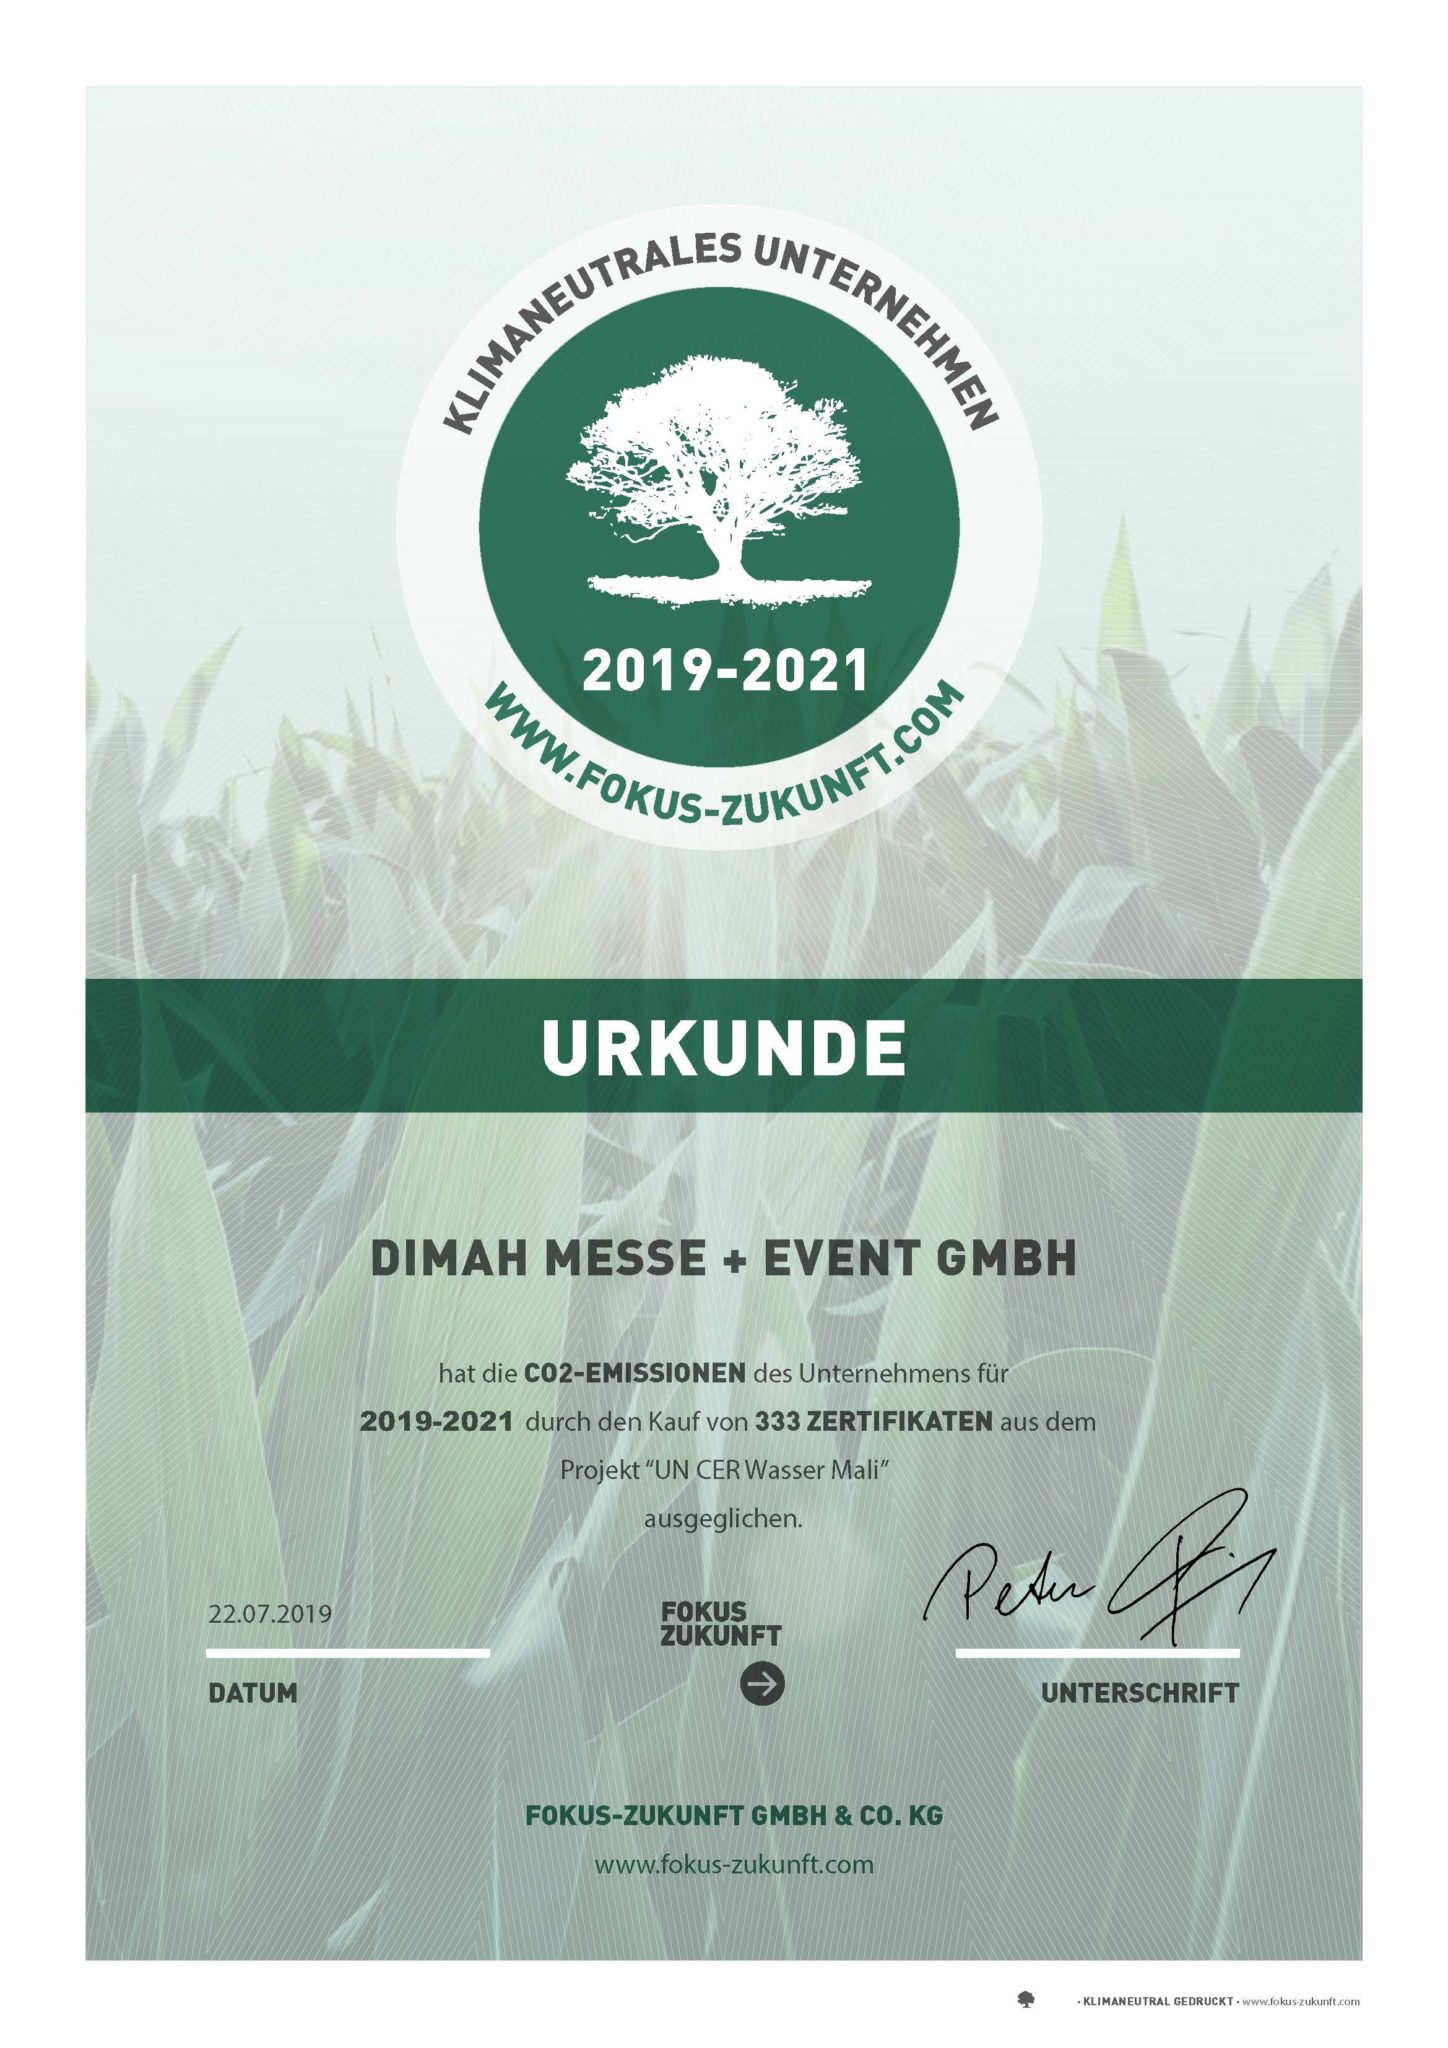 DIMAH Messe und Event GmbH Urkunde